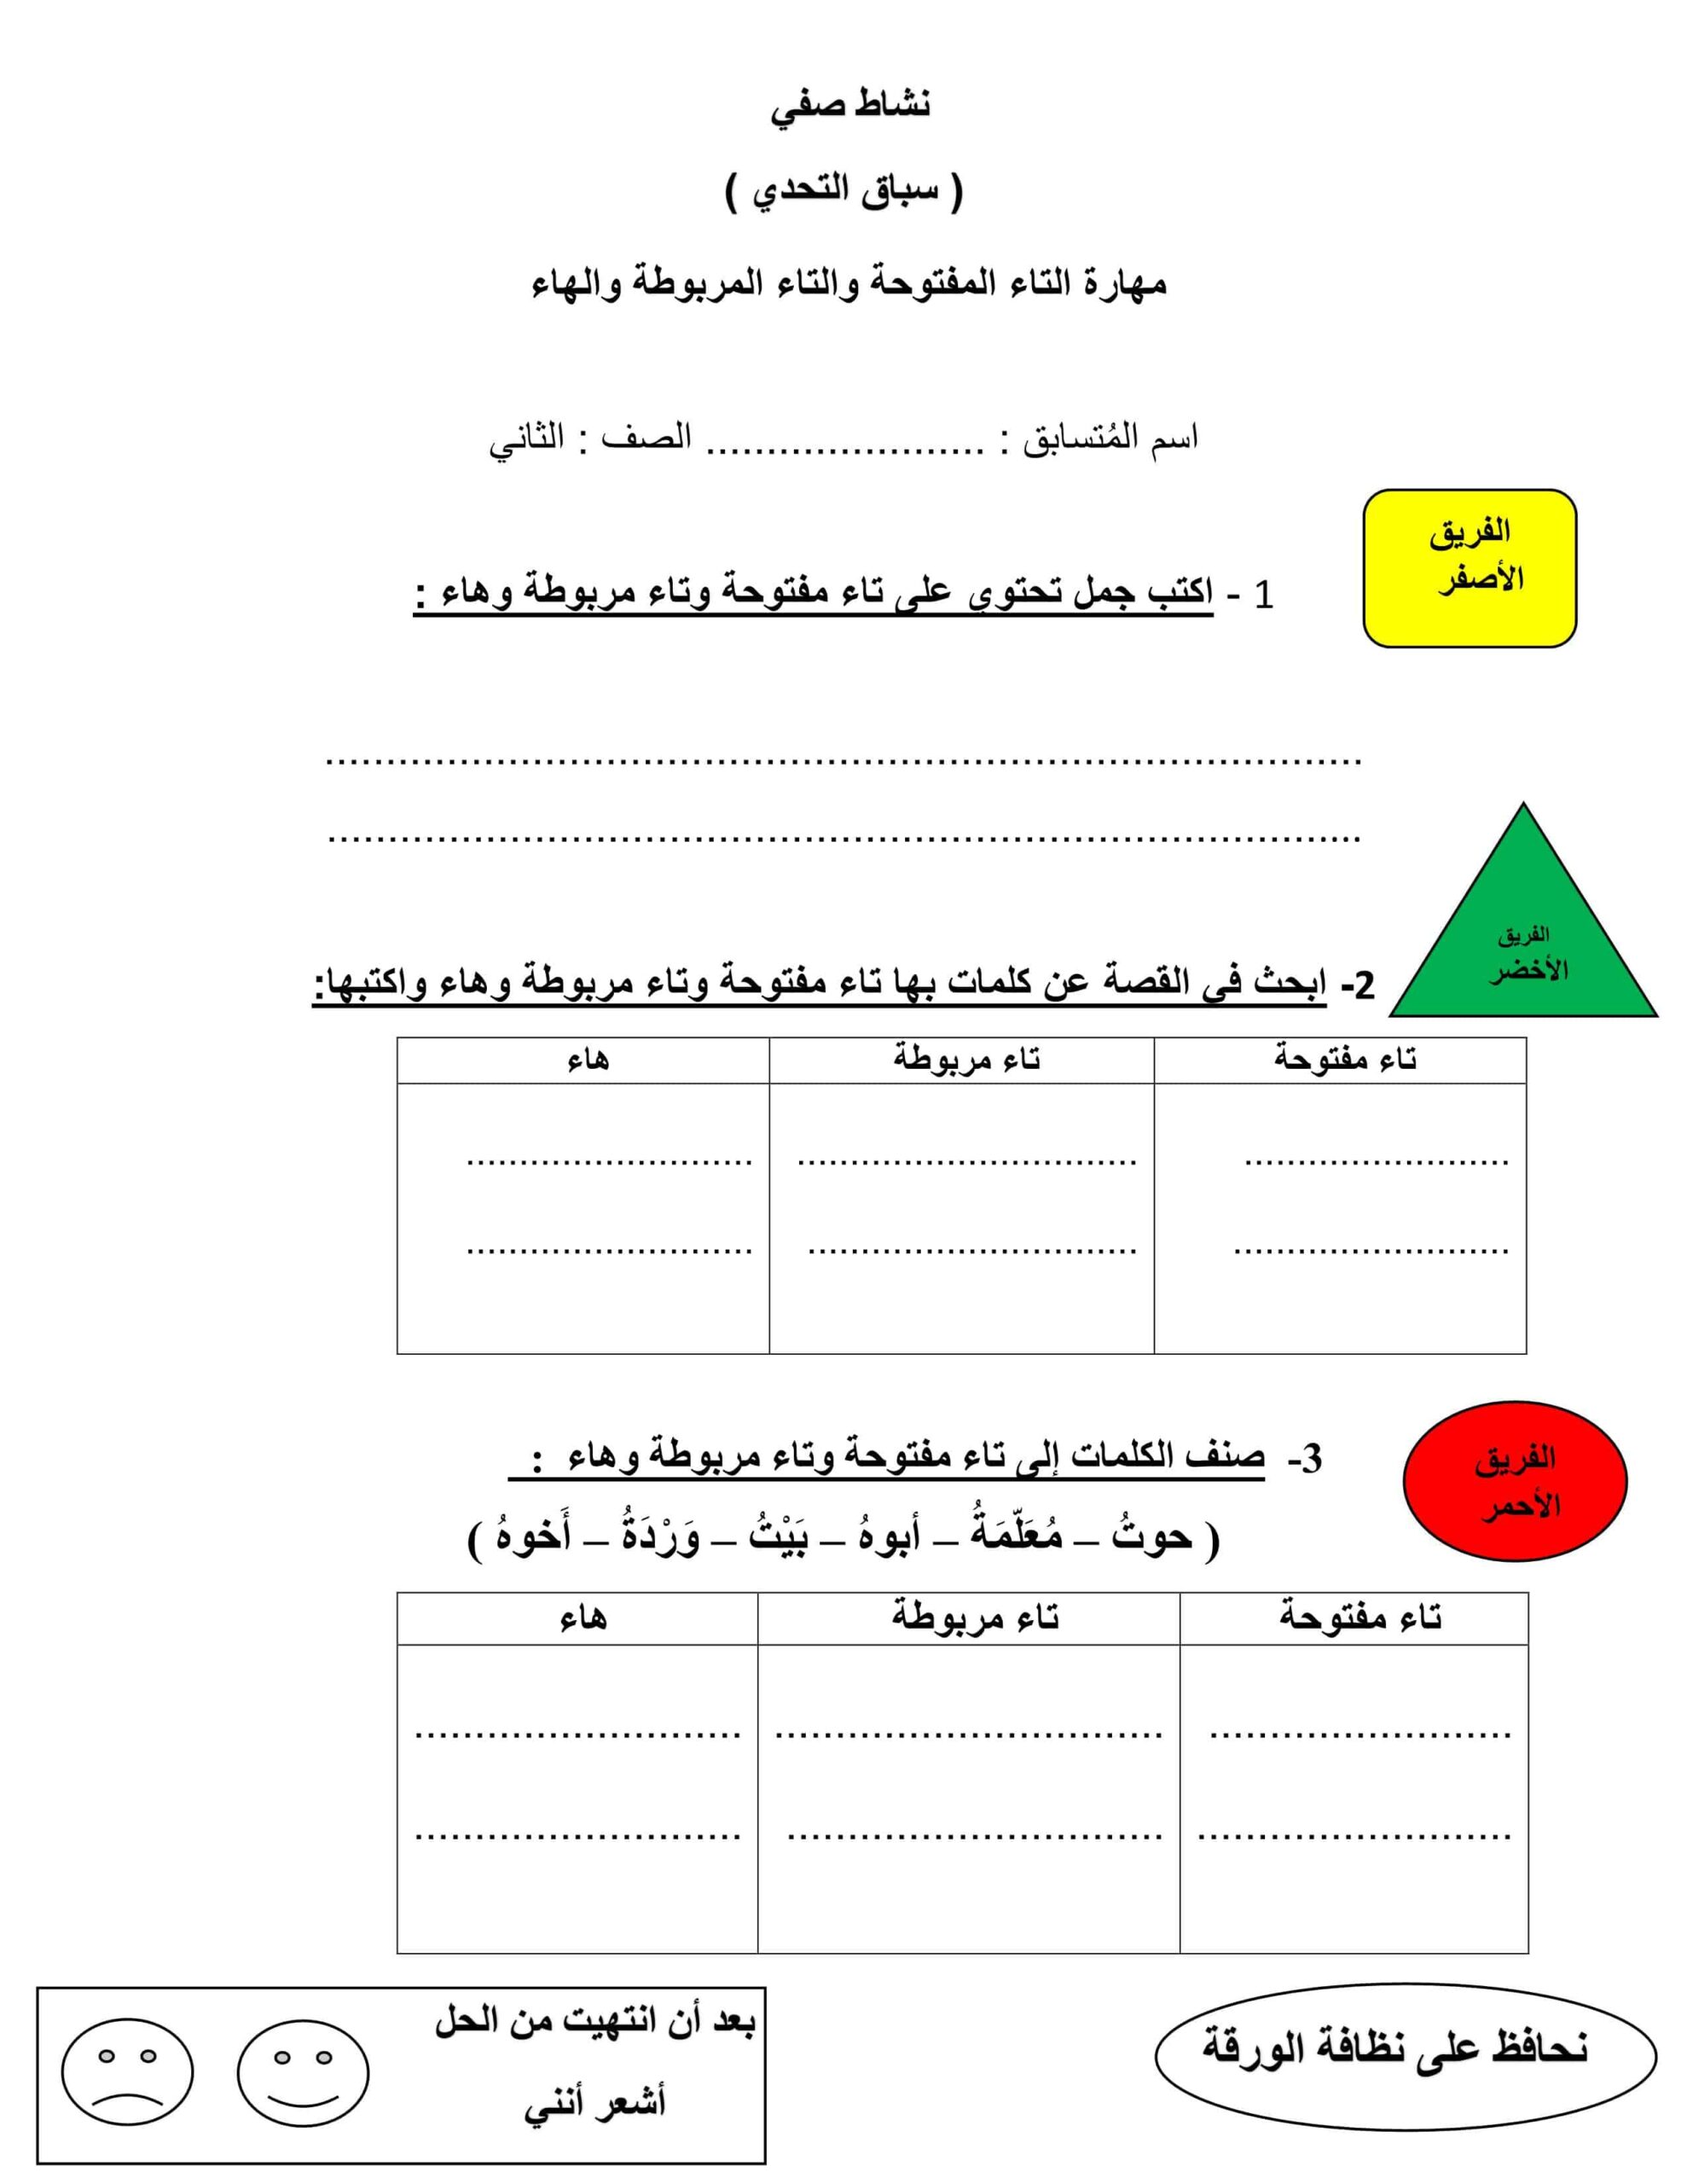 مهارة التاء المفتوحة والتاء المربوطة والهاء اللغة العربية الصف الثاني